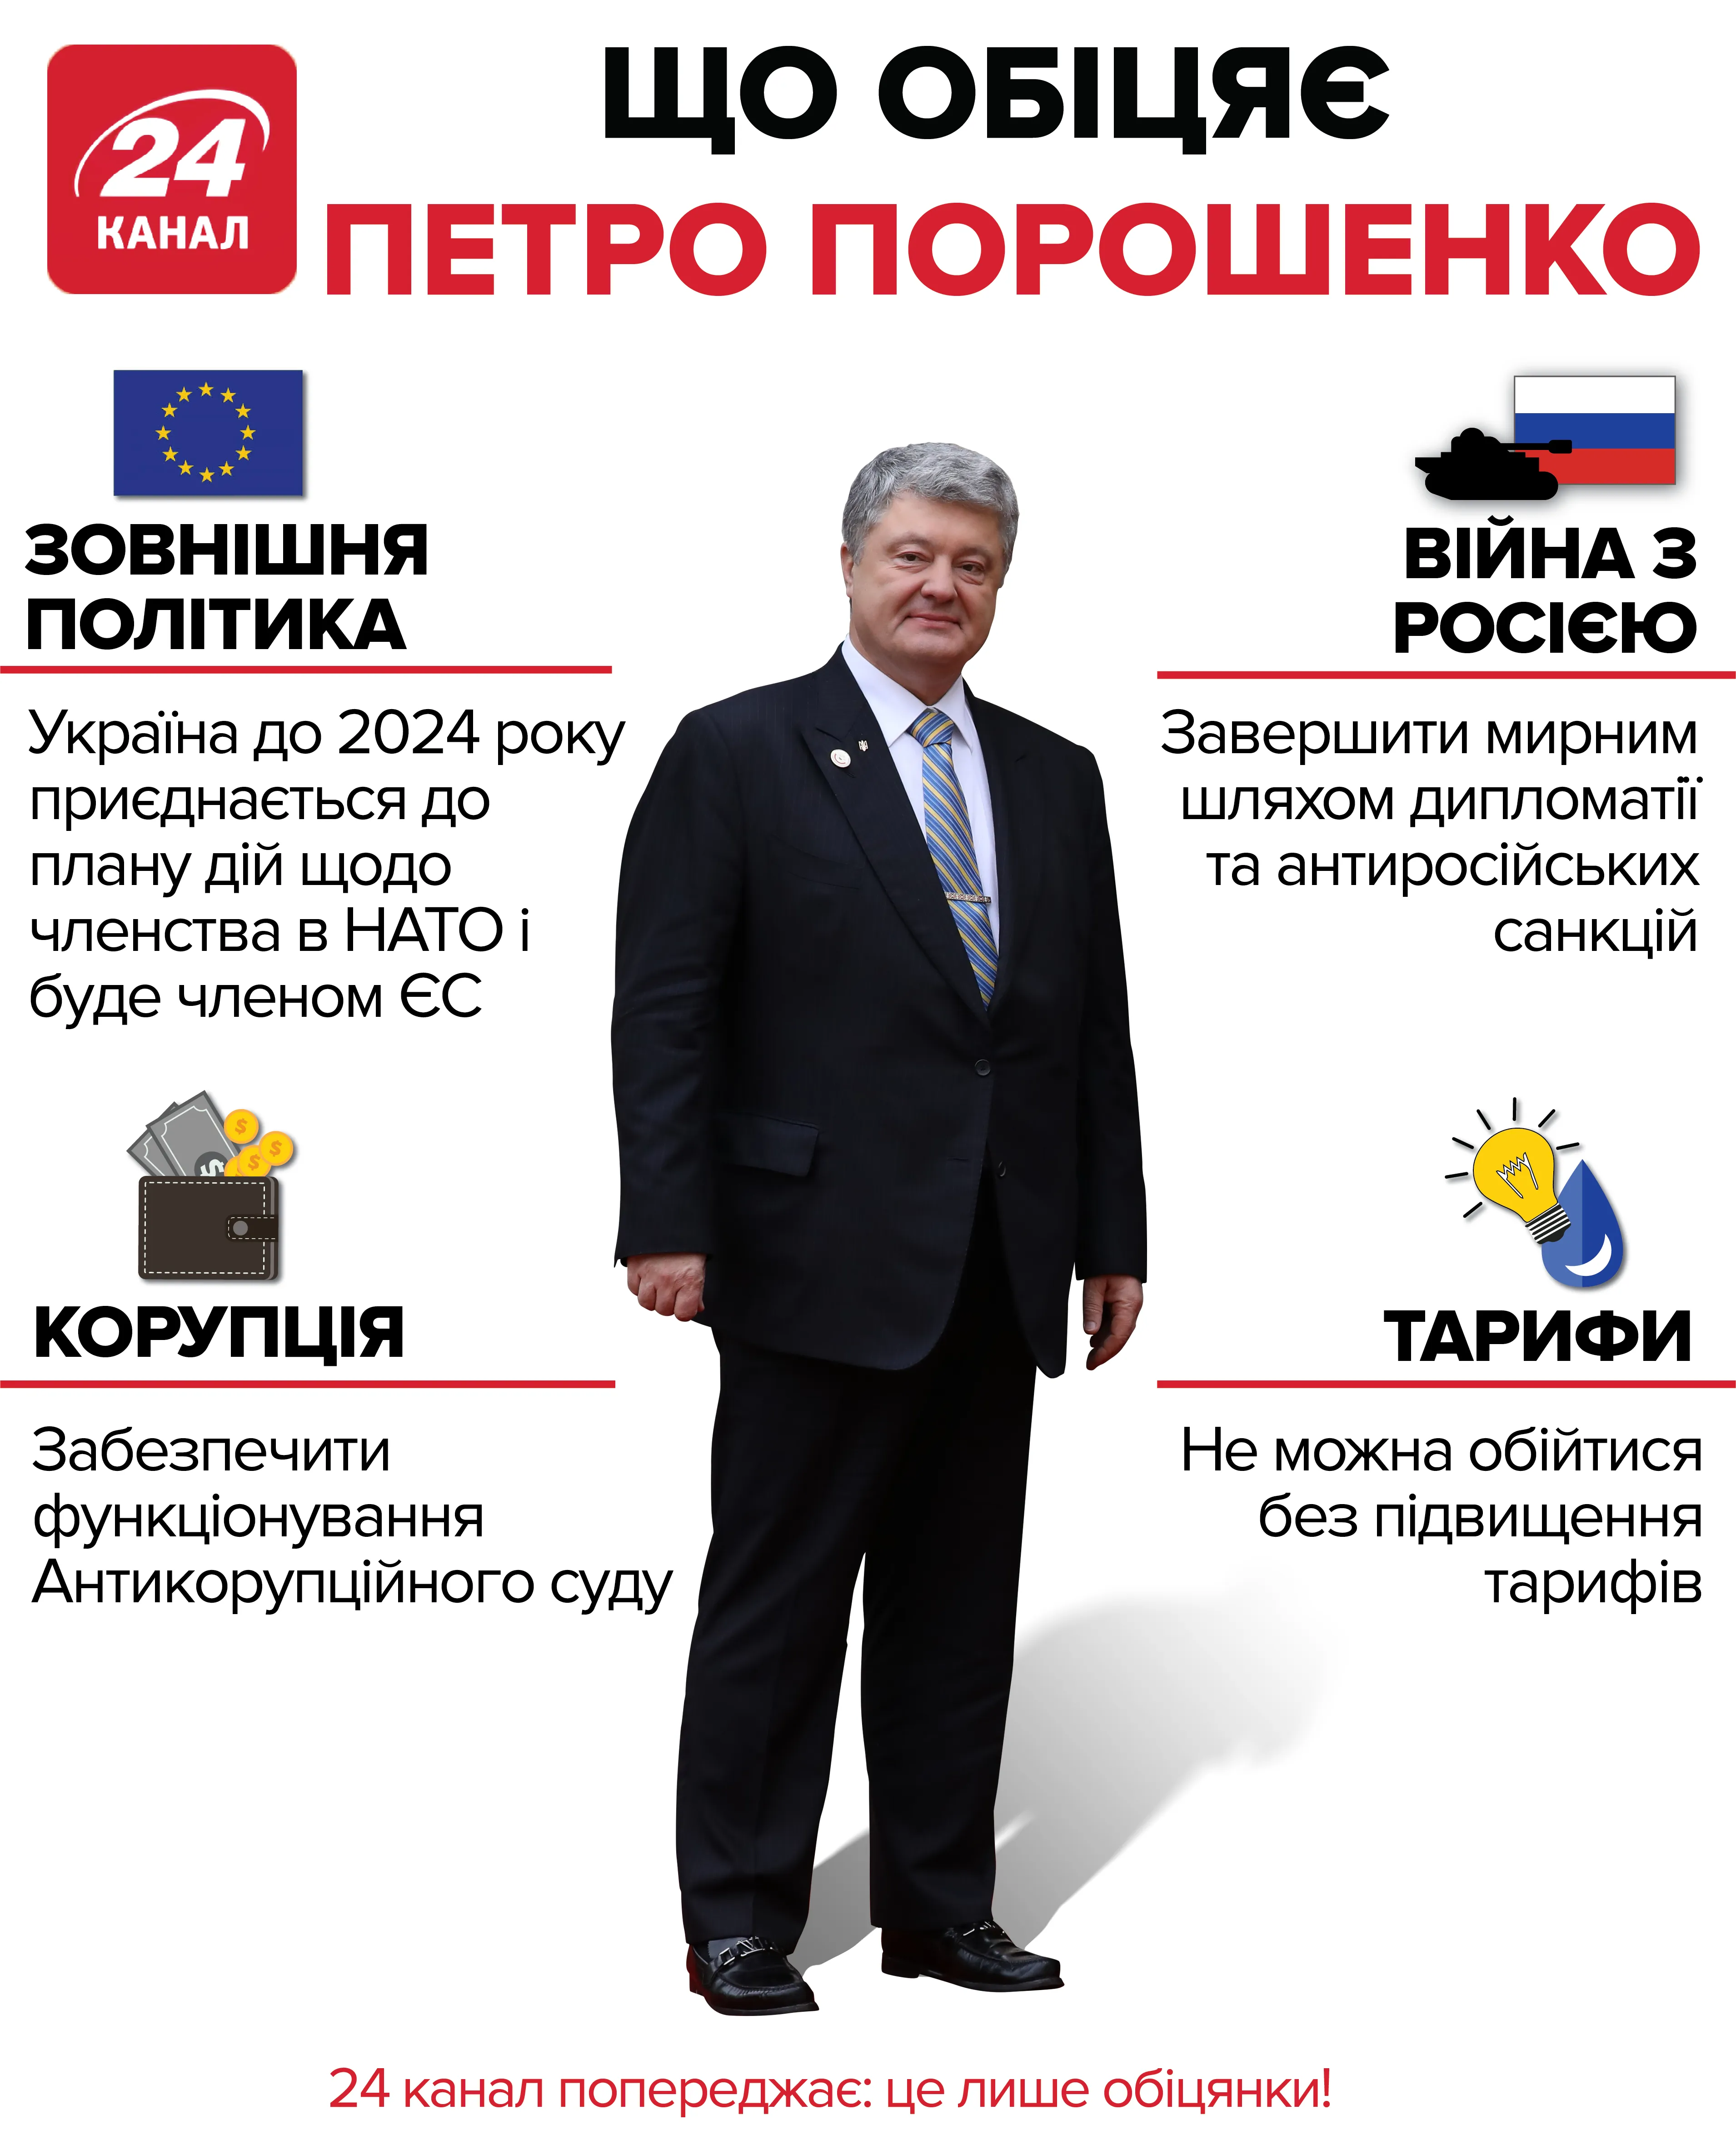 Що обіцяє Петро Порошенко: інфографіка